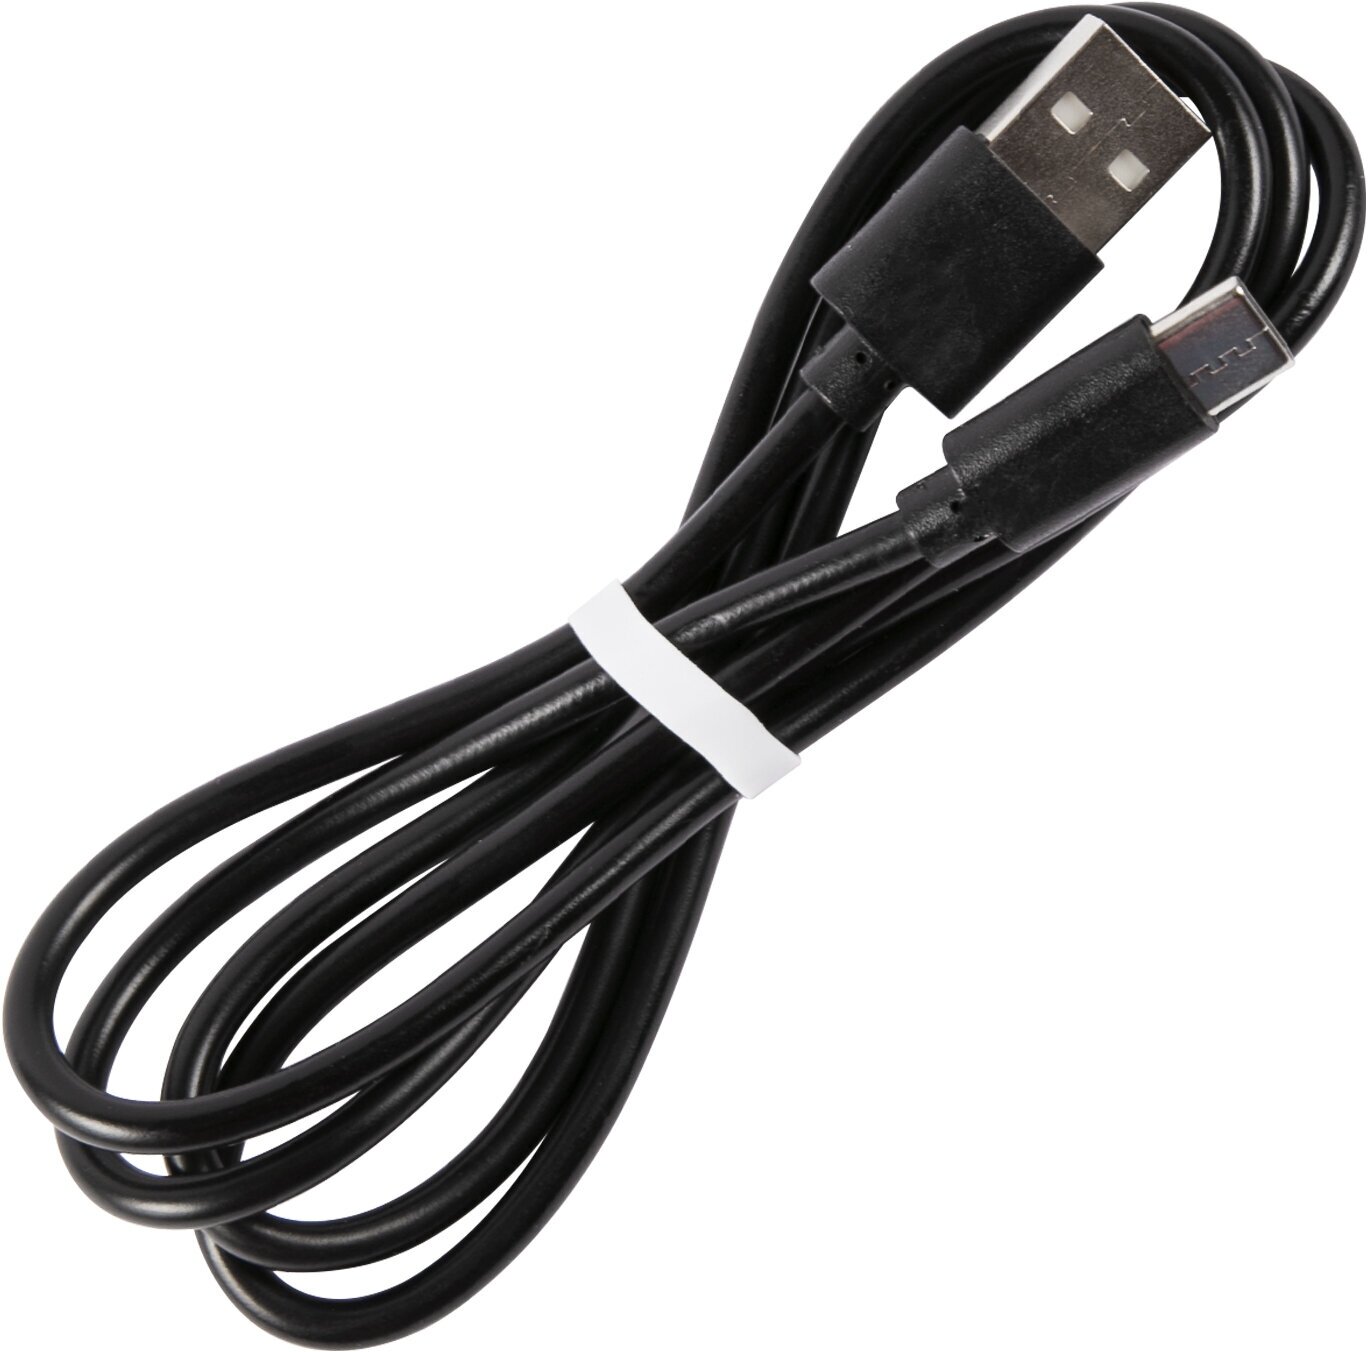 Дата кабель USB - Type-C 2А/Провод USB - Type-C/Кабель USB - Type-C разъем/Зарядный кабель черный